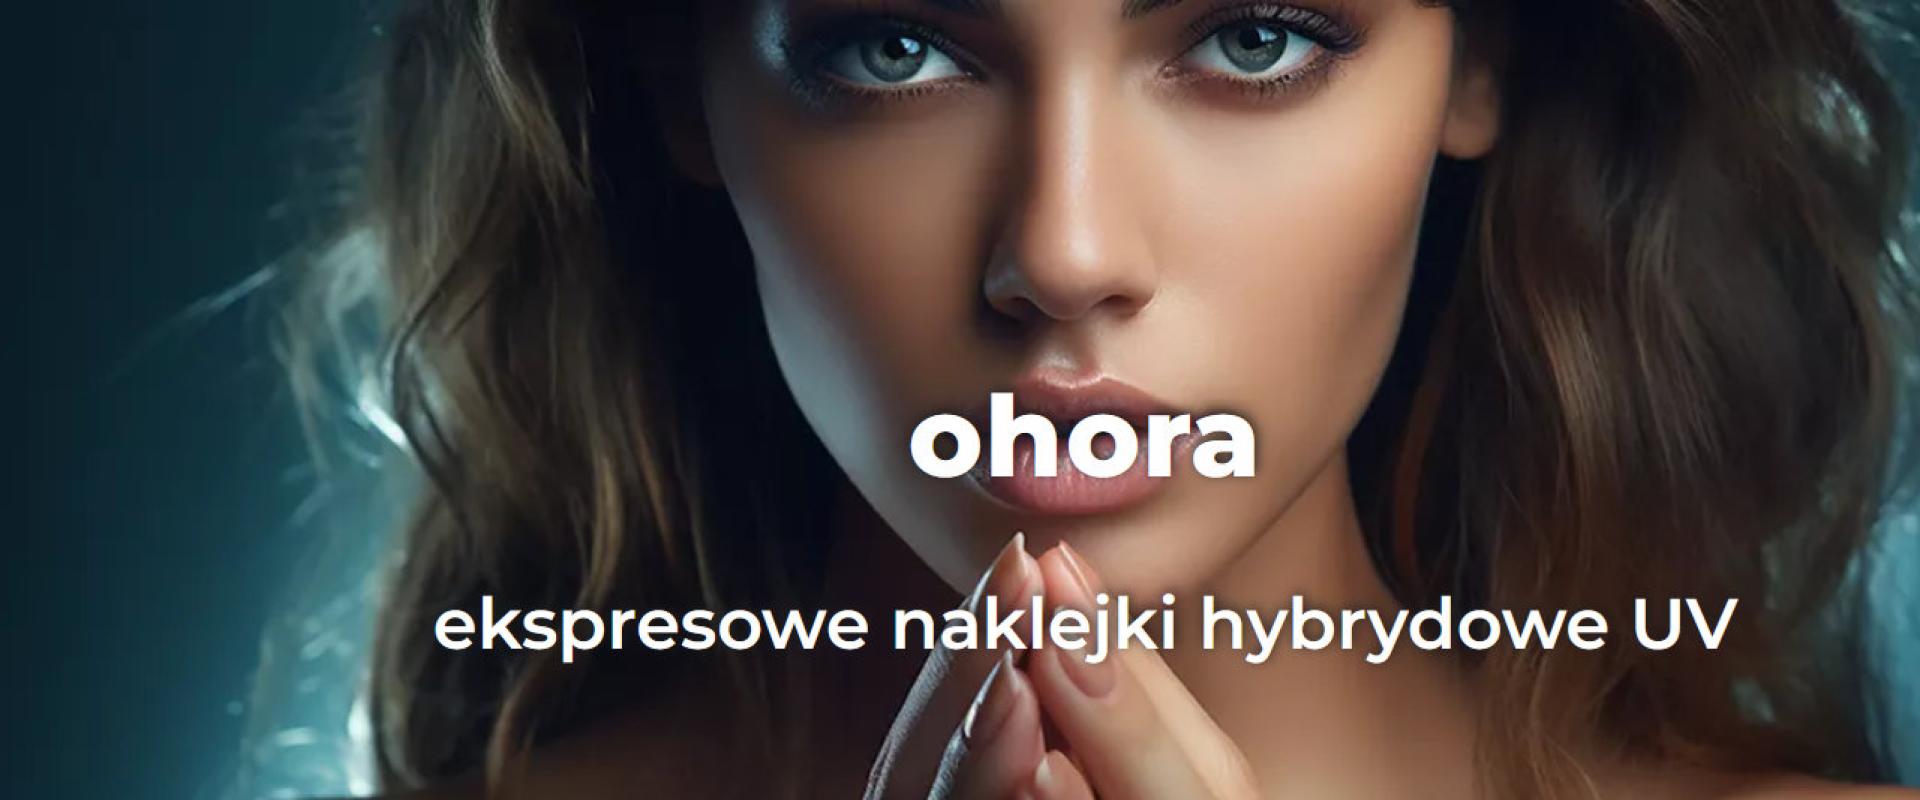 Ohora - nowa jakość stylizacji paznokci - alternatywa dla lakierów hybrydowych